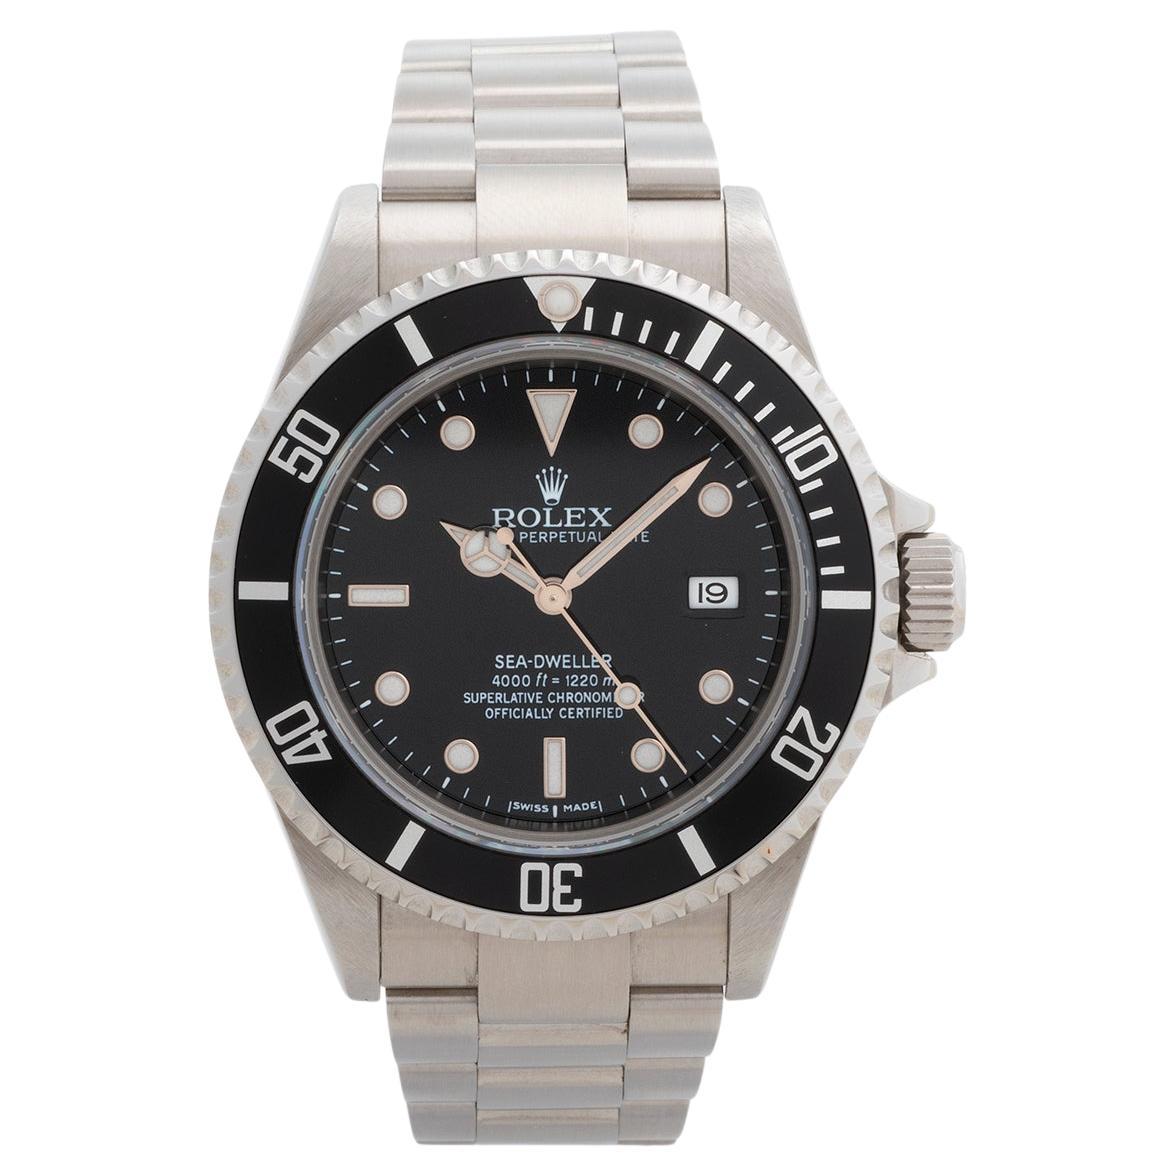 Montre-bracelet Rolex Seadweller Réf. 16600 / 16600t. Ensemble complet. Année 2007/2008 en vente